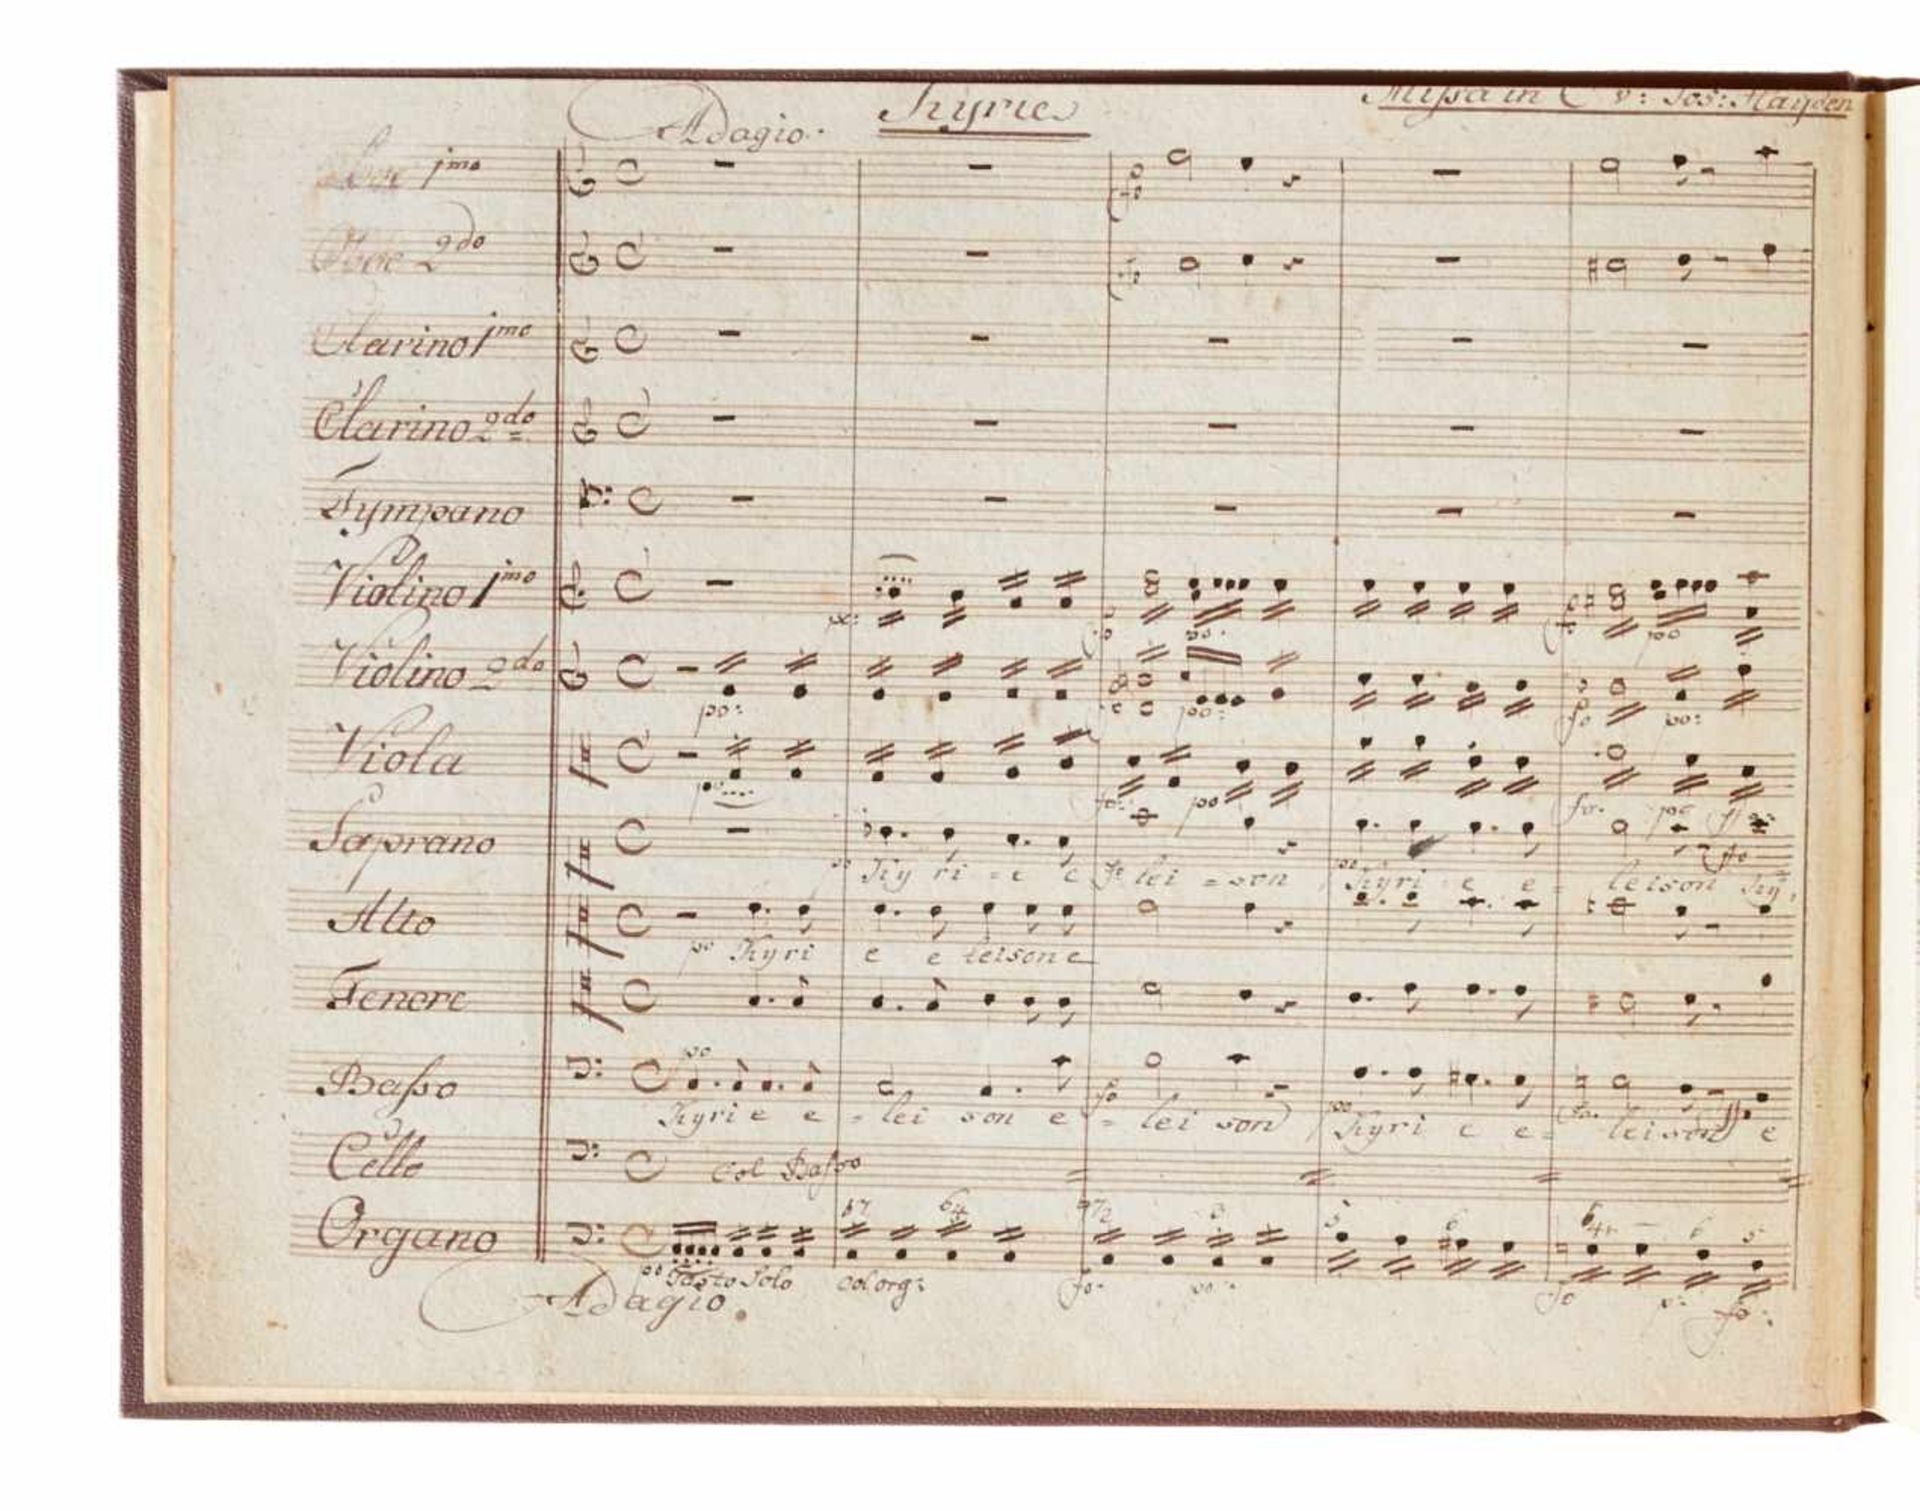 Haydn "Missa solemnis in C d[ur] Mariazeller Messe ... dal Sign. Jos. Haydn.Partitura." Deutsche - Bild 3 aus 3